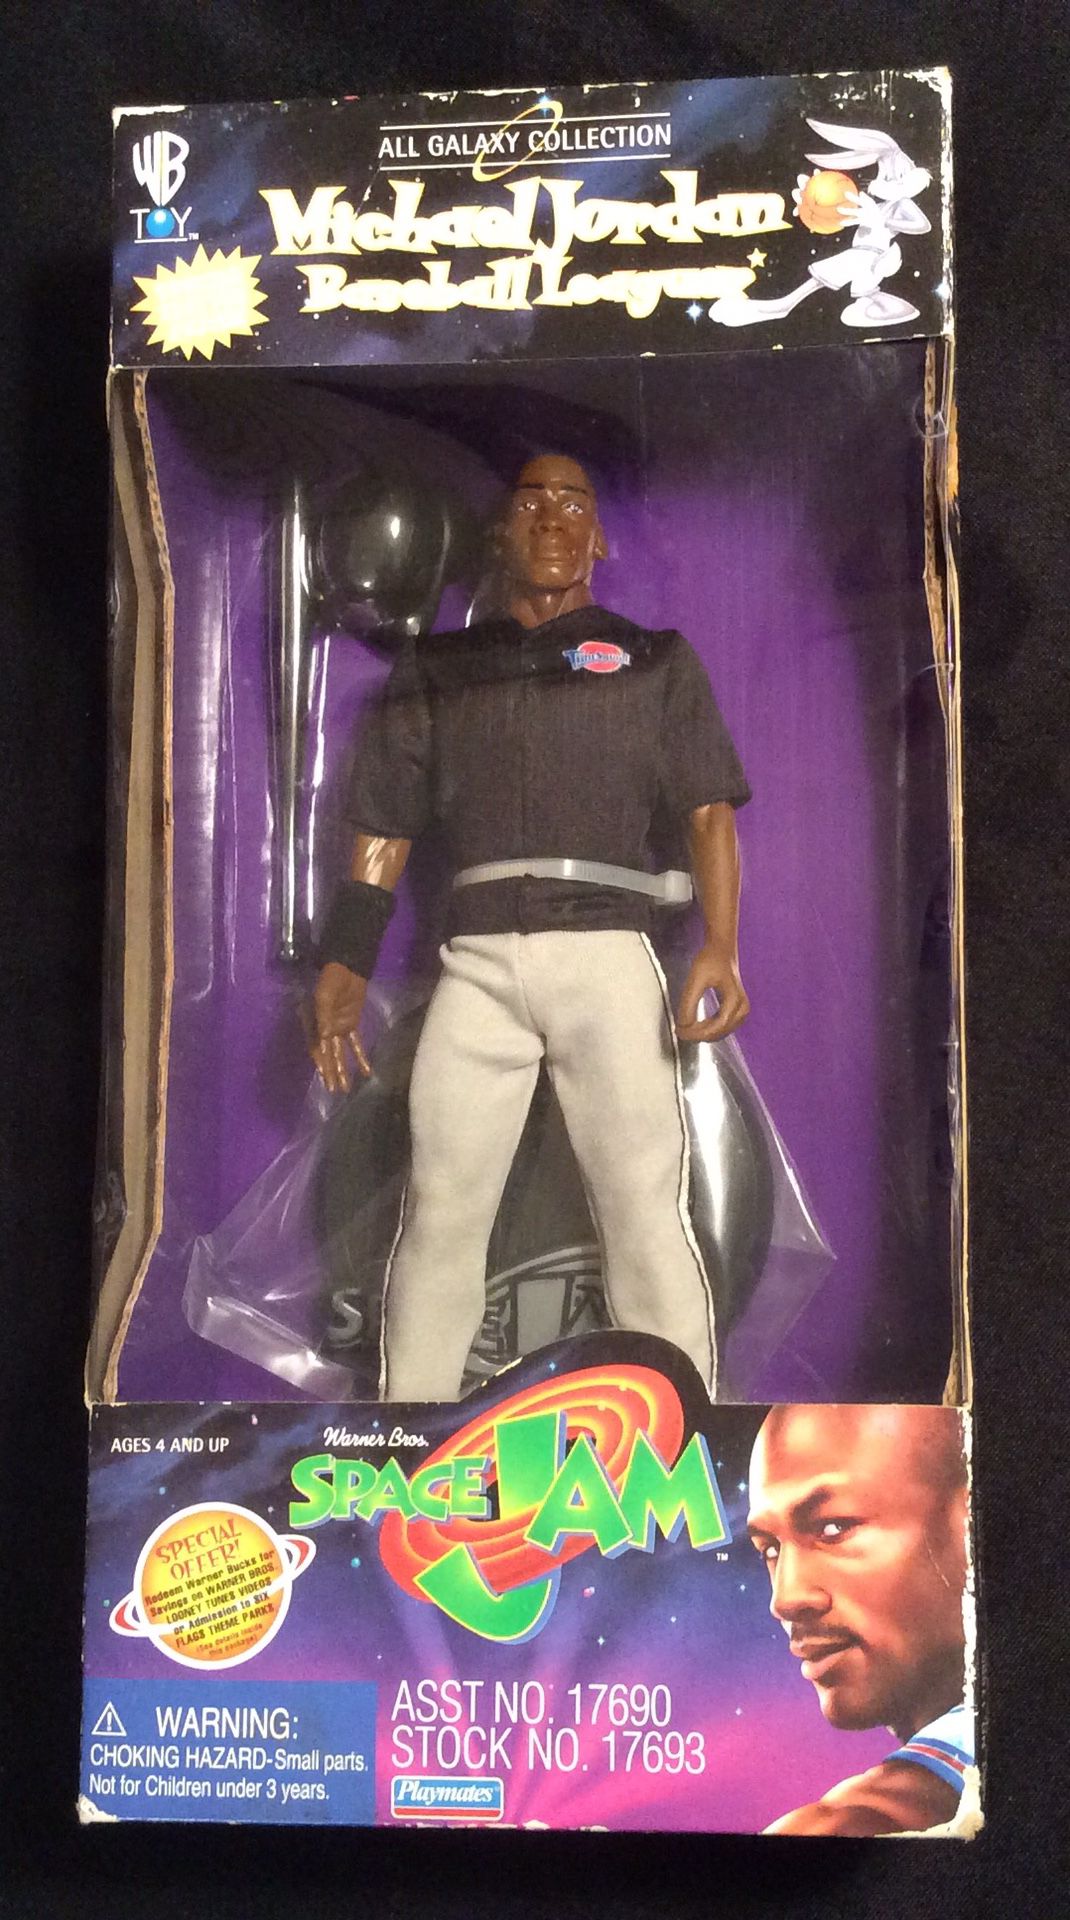 Michael Jordan Space Jam Action Figure "Collectible" $40 Each